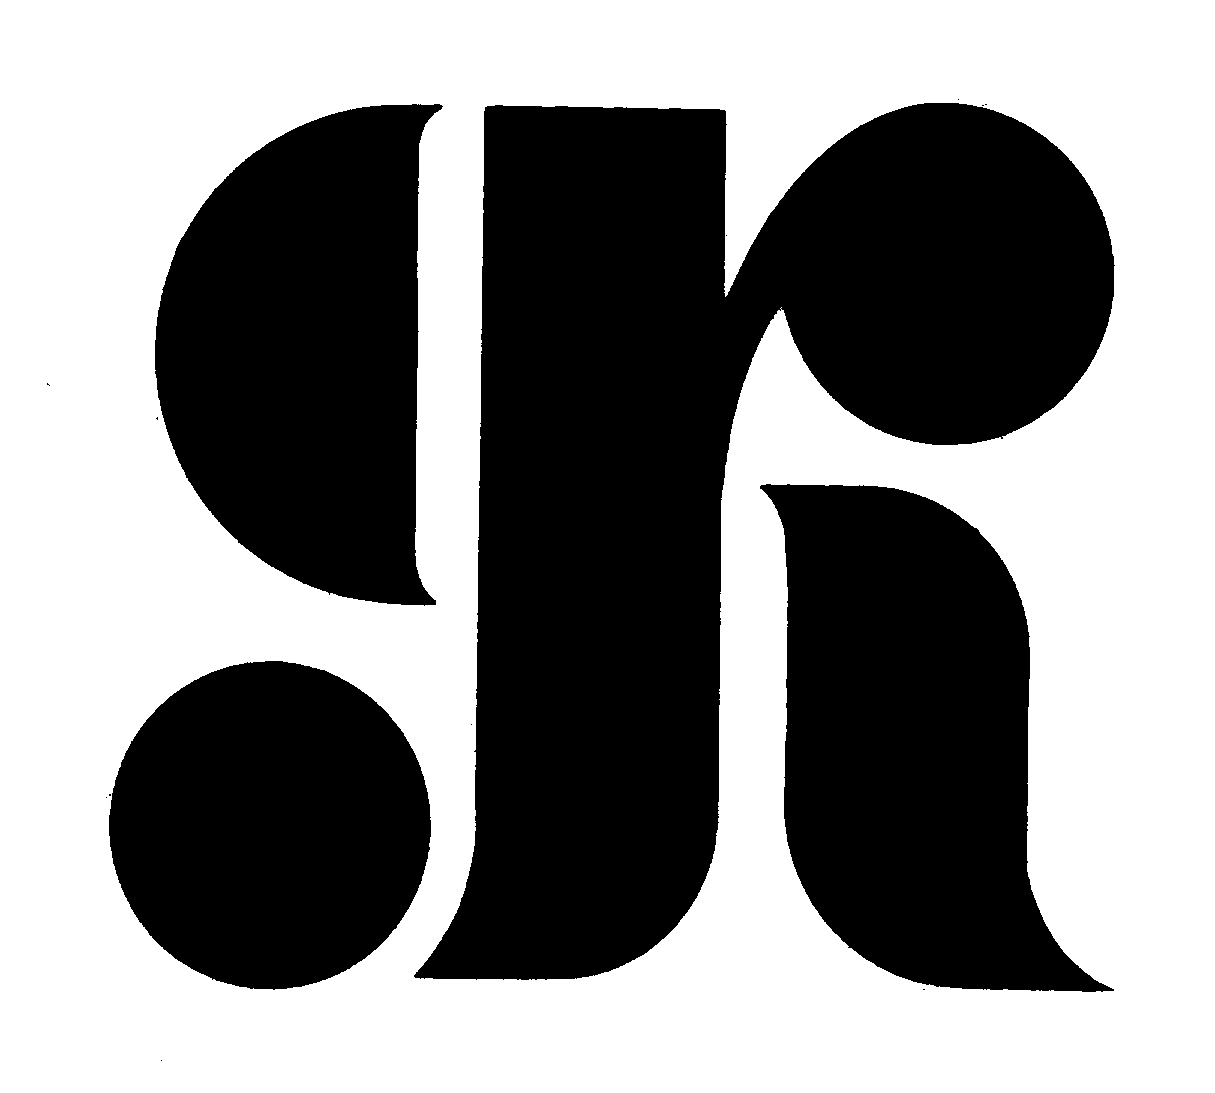 Trademark Logo GK